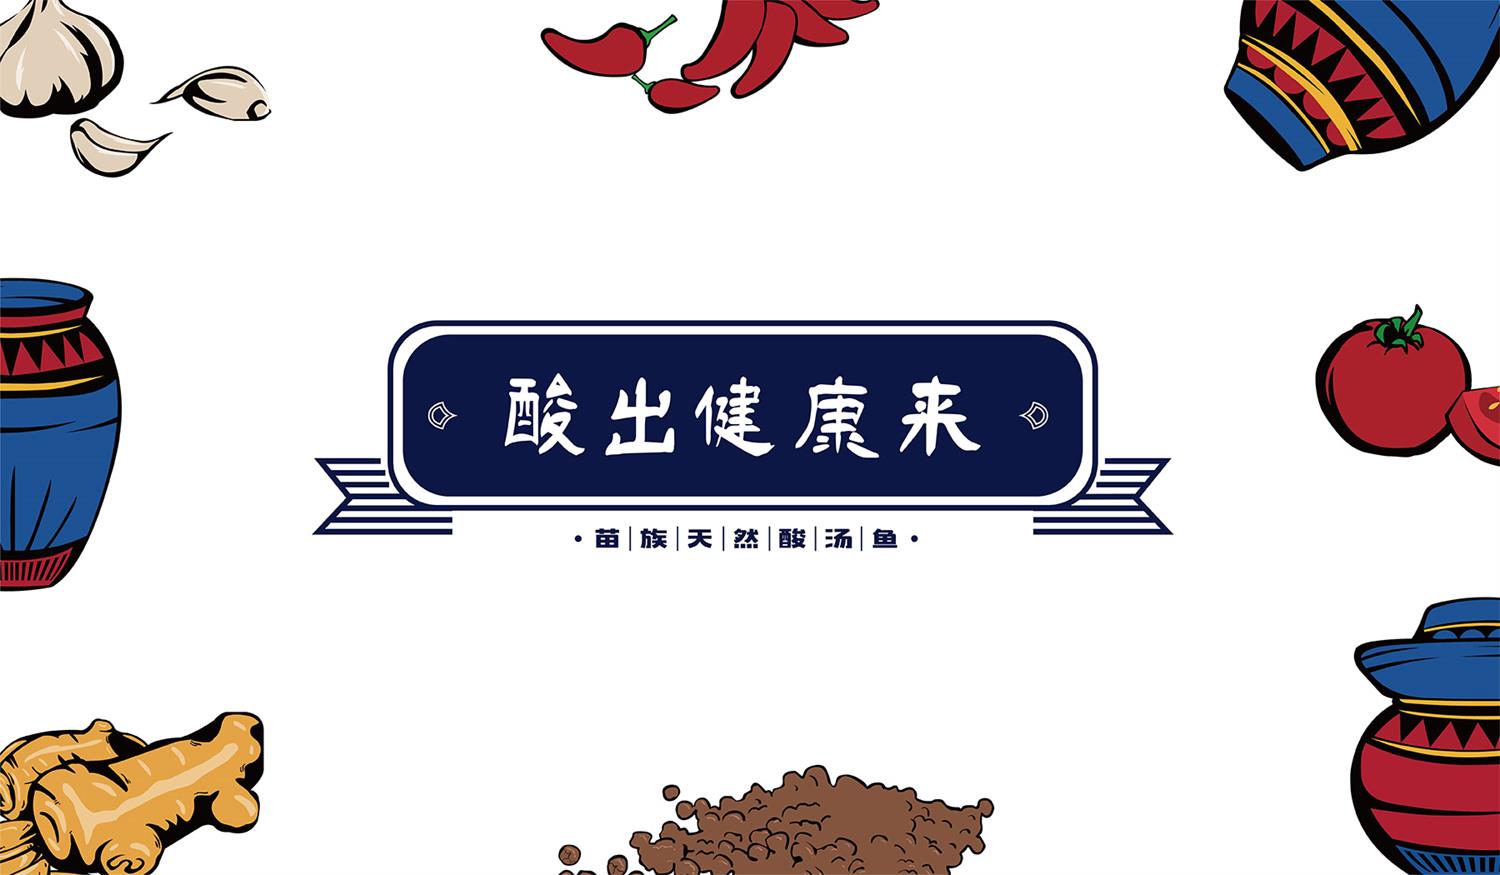 深圳餐饮品牌广告语设计